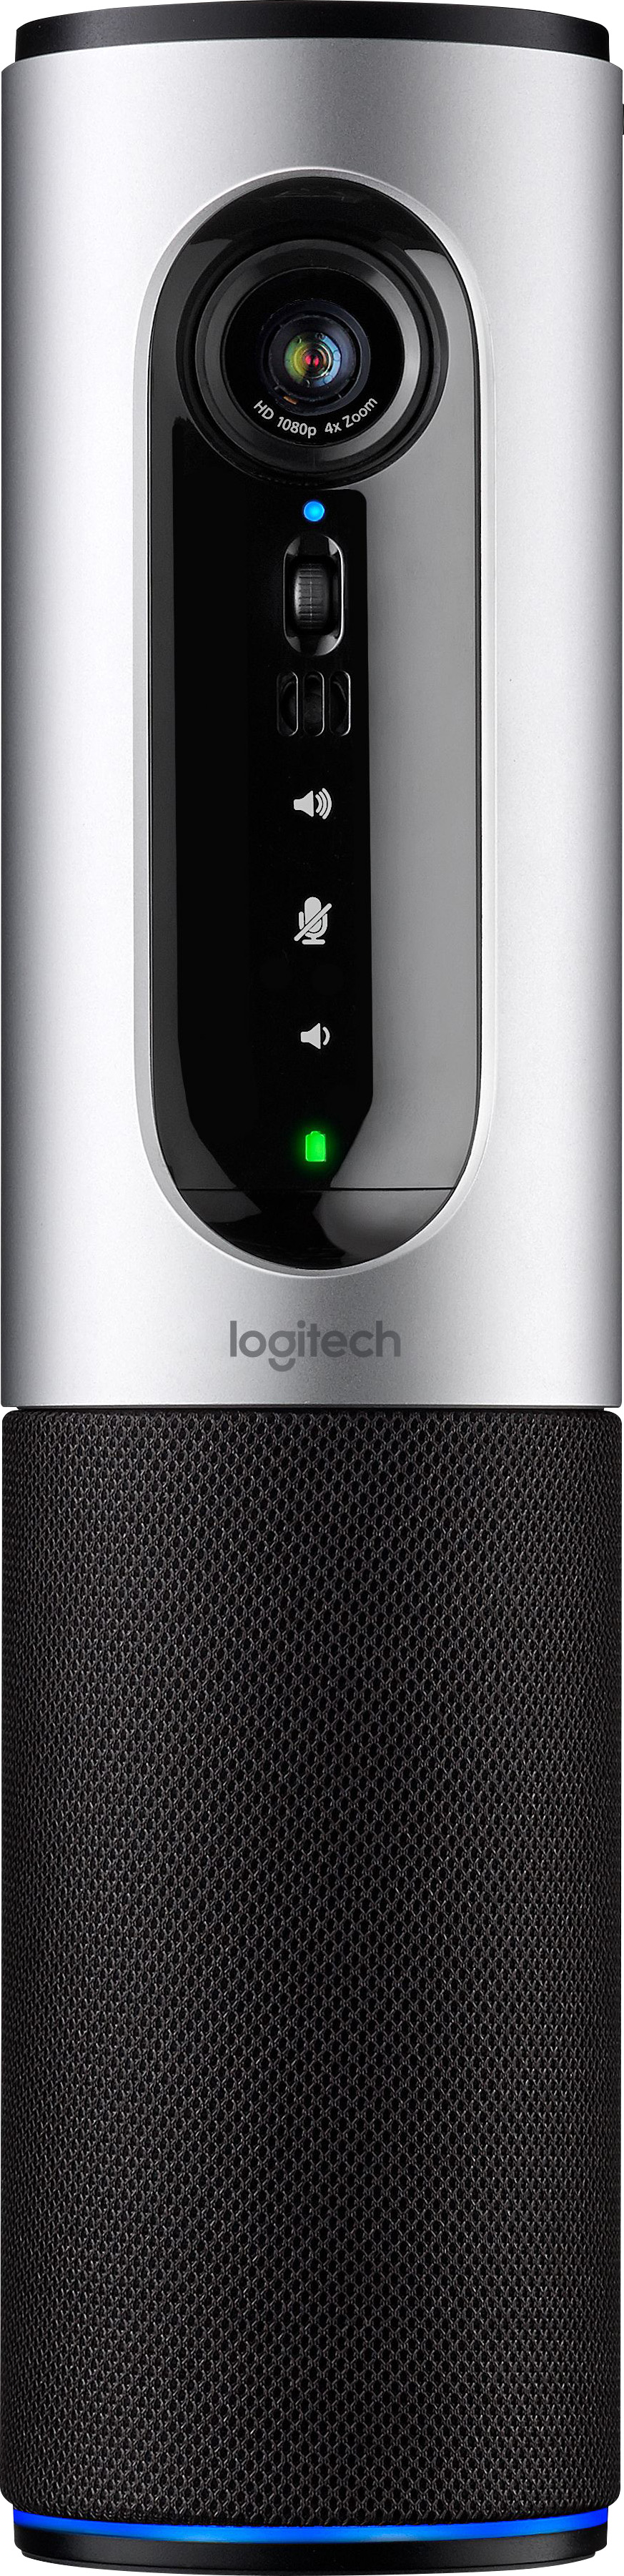 Logitech - LOGITECH - ConferenceCam Connect Bluetooth - Gris